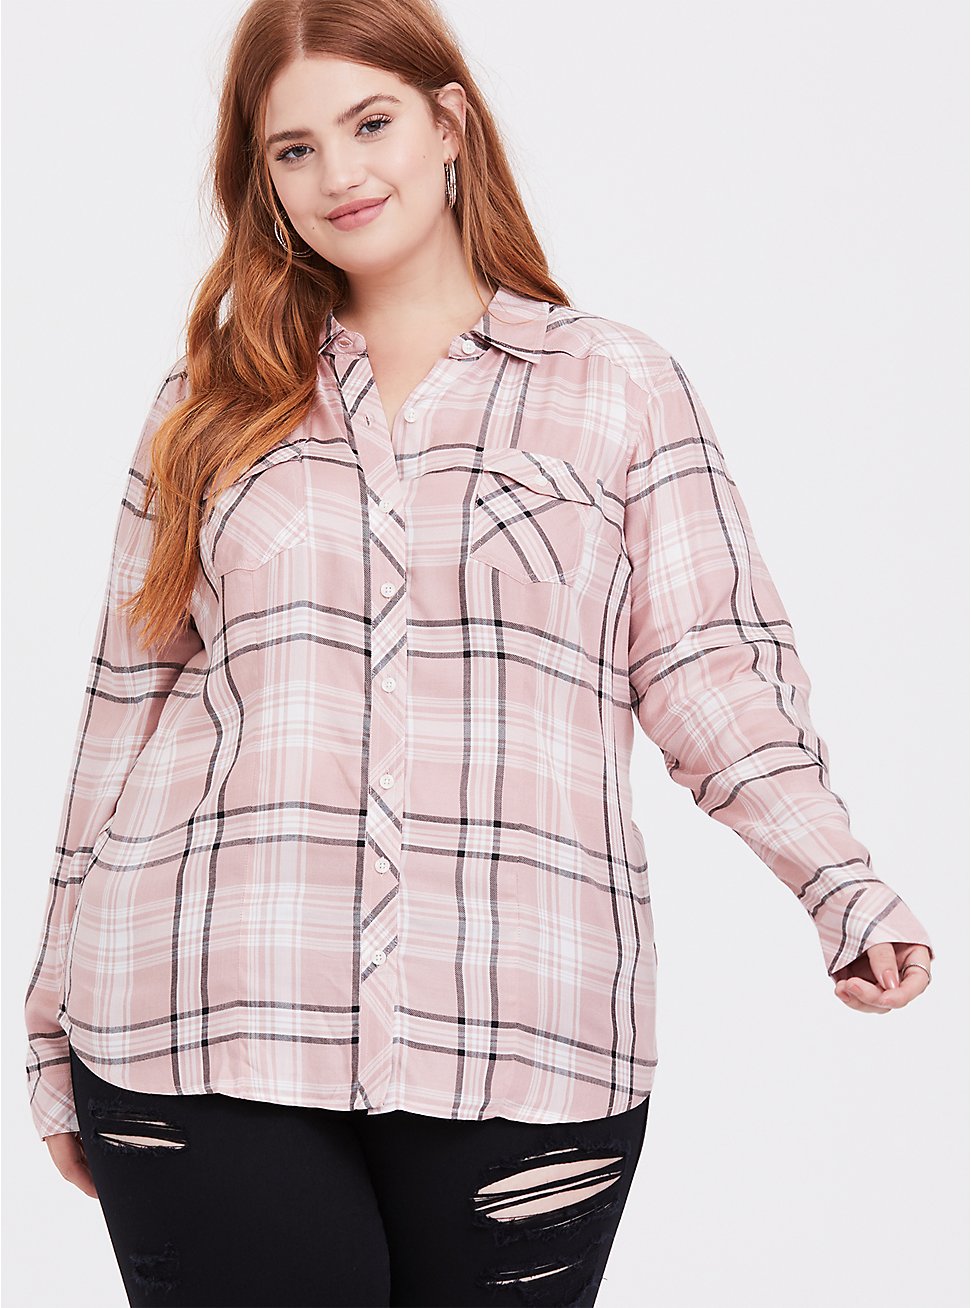 Taylor - Pink Plaid Button Front Slm Fit Shirt - Plus Size | Torrid